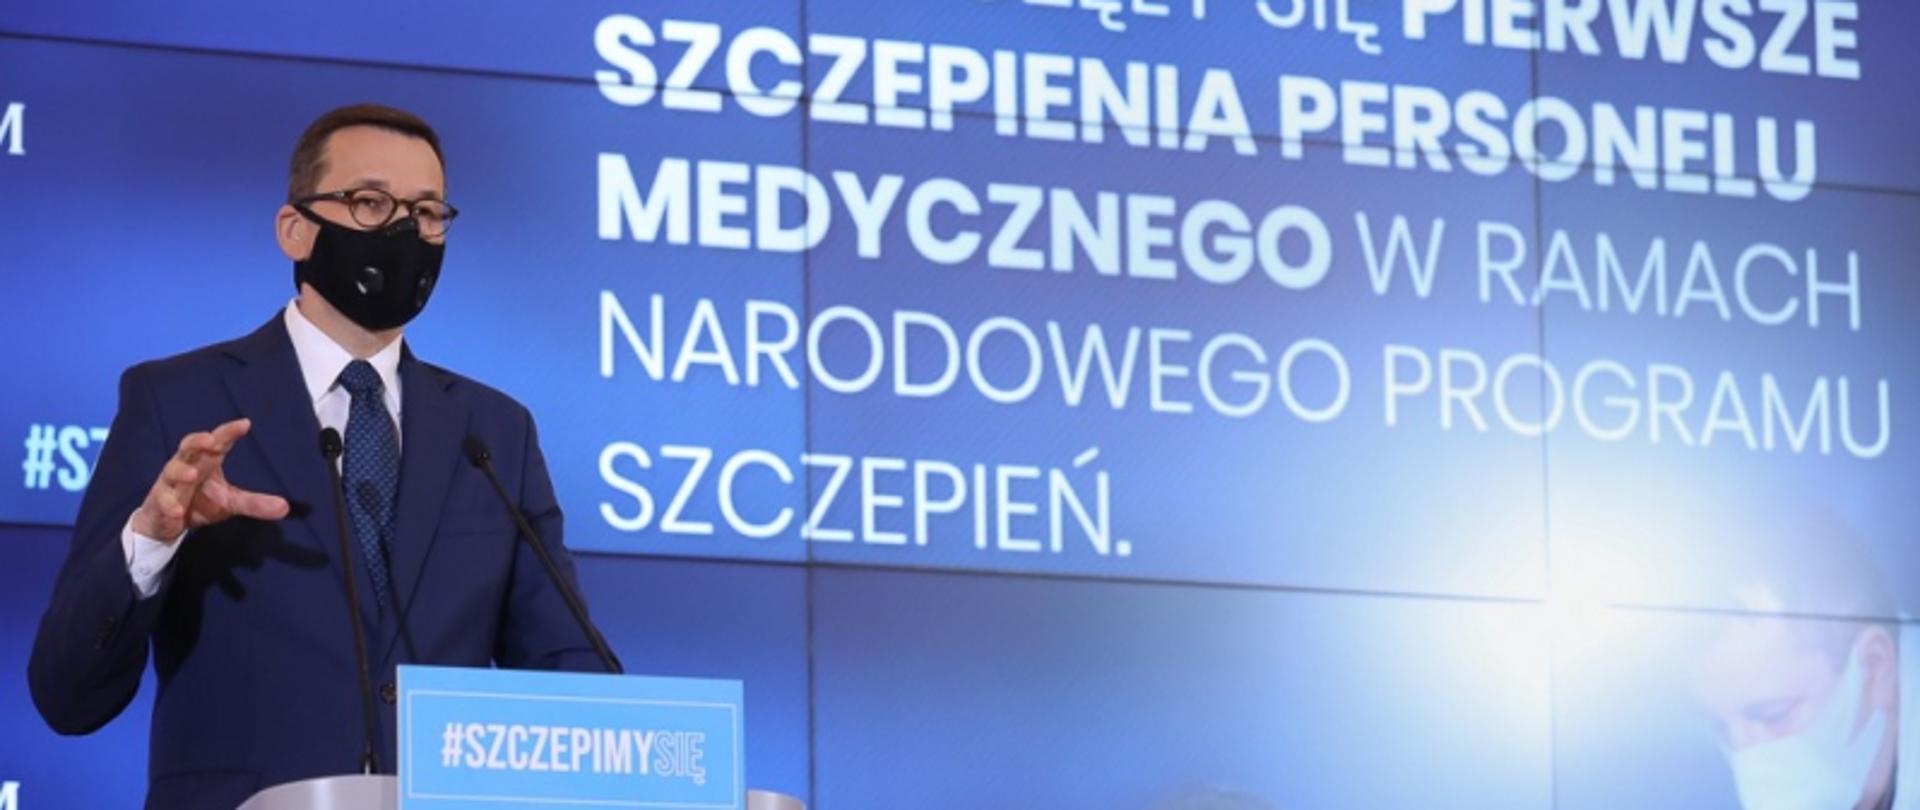 Premier Morawiecki stoi przy mównicy za nim wyświetlany jest napis "szczepienia personelu medycznego w ramach narodowego programu szczepień"